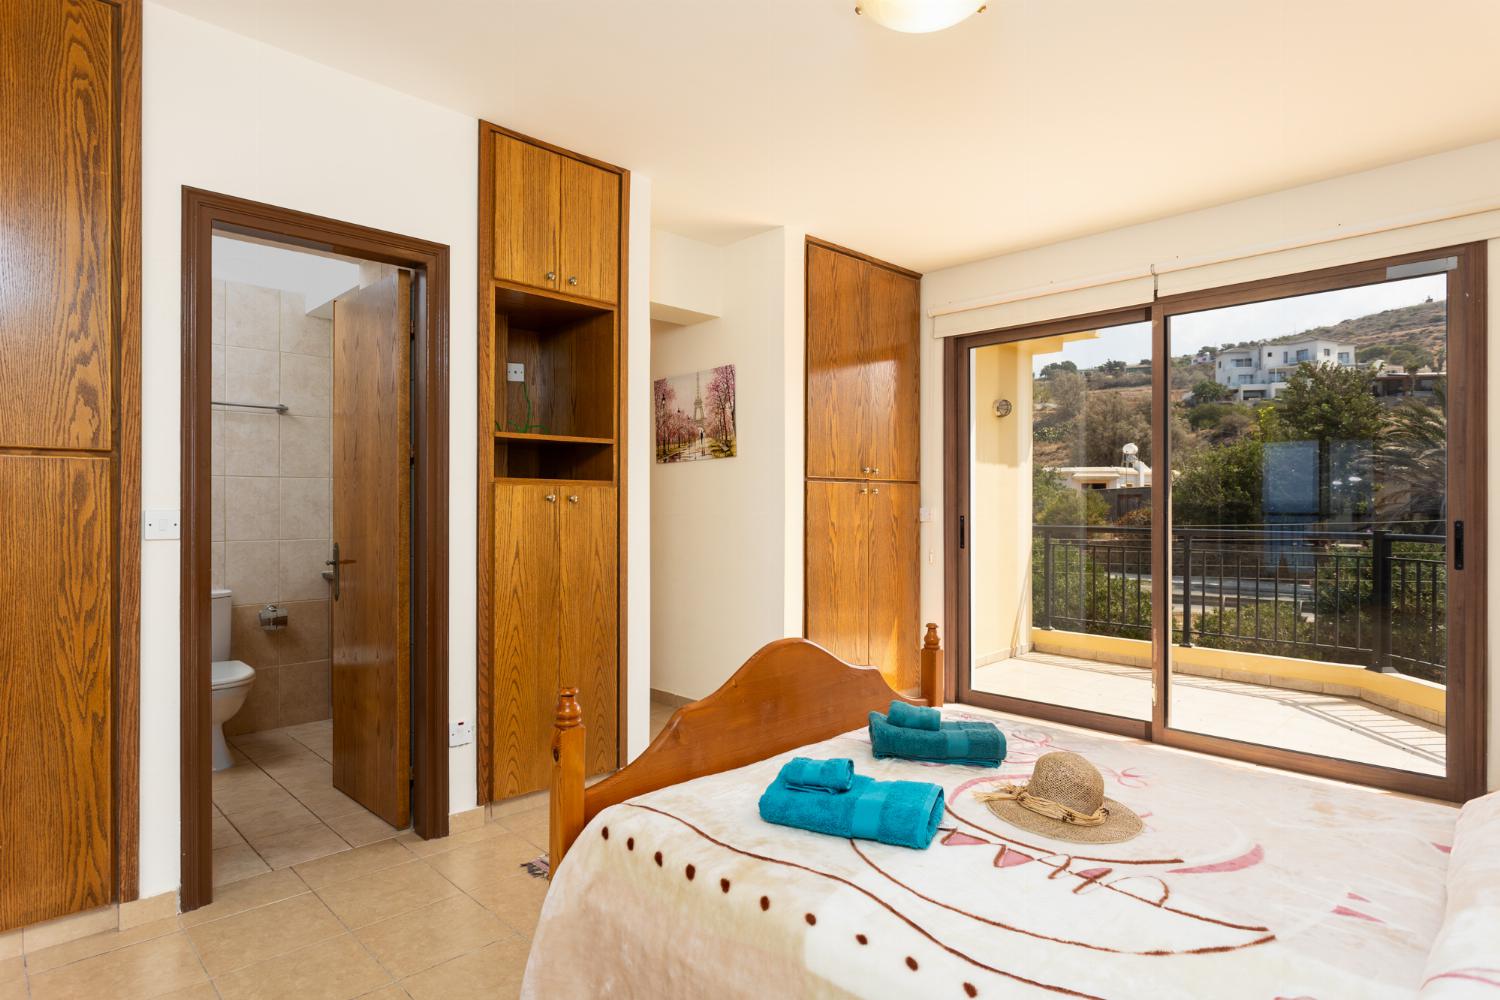 Double bedroom with en suite bathroom, A/C, and sea views